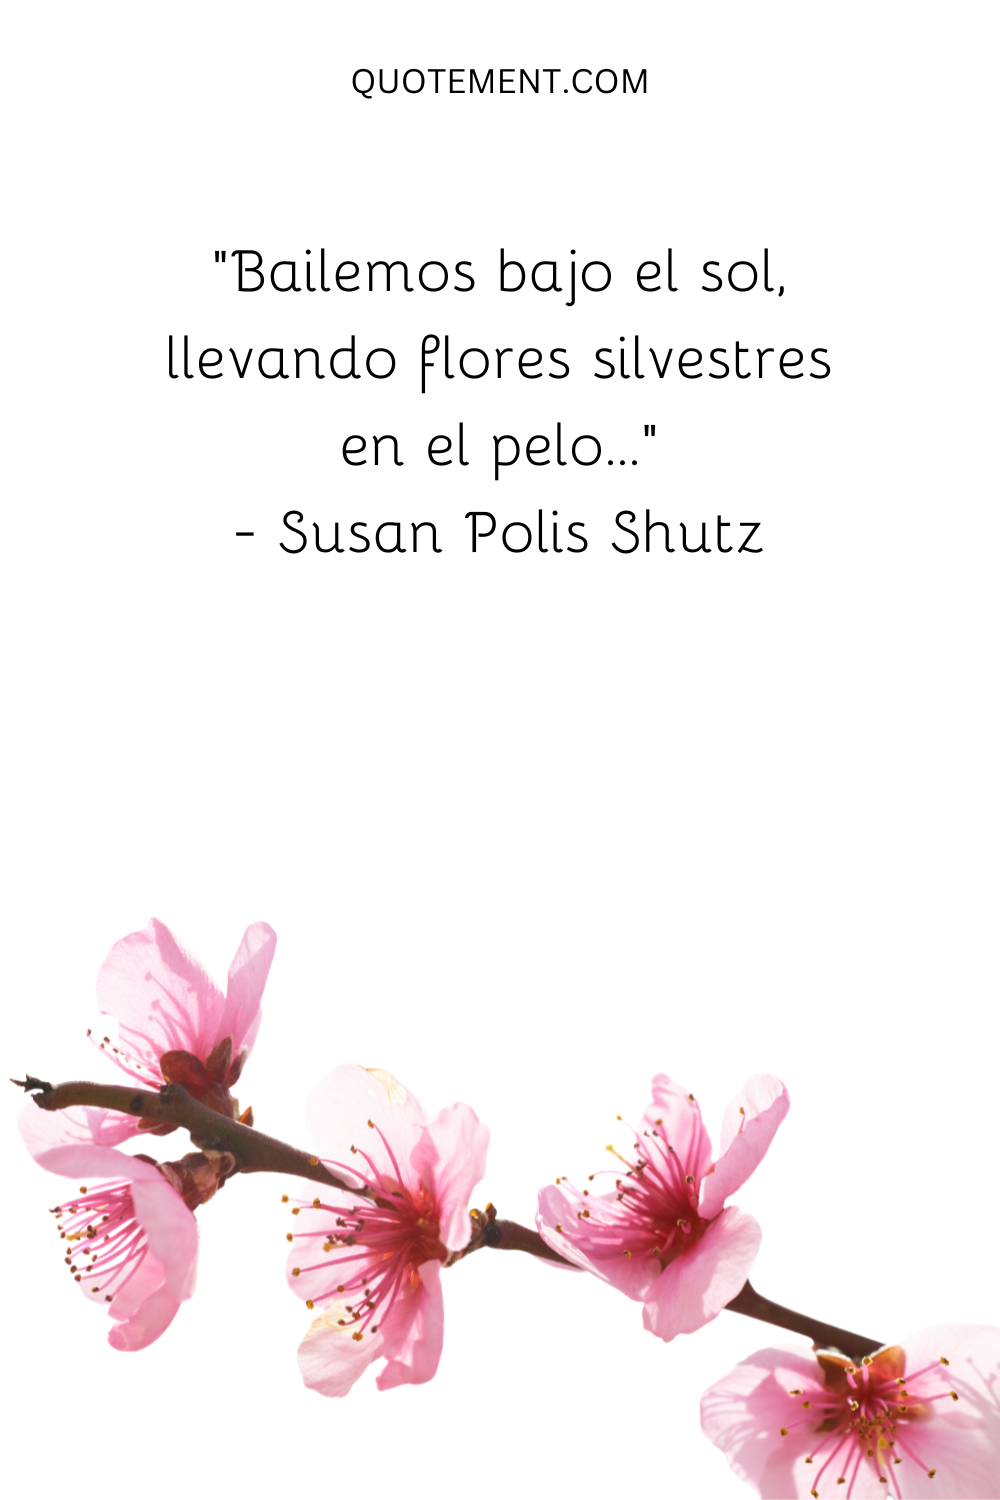 "Bailemos bajo el sol, llevando flores silvestres en el pelo..." - Susan Polis Shutz